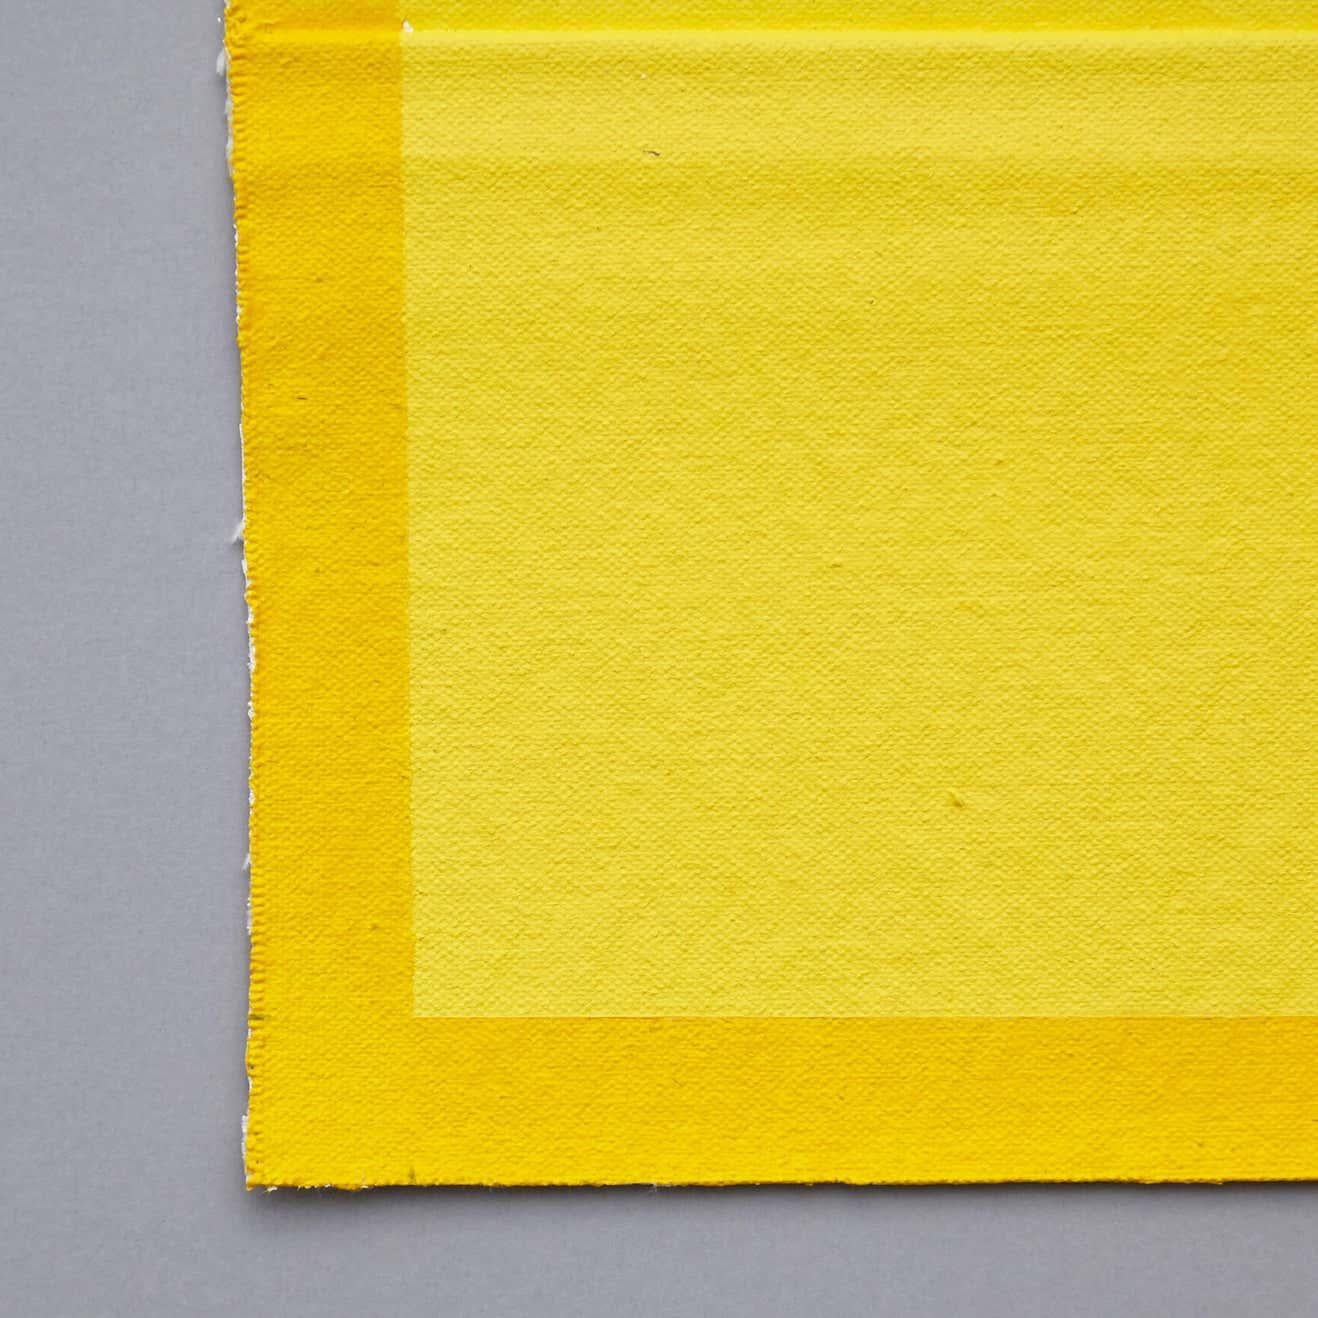 British Ángela de la Cruz Pinch Yellow Contemporary Artwork, 2015 For Sale